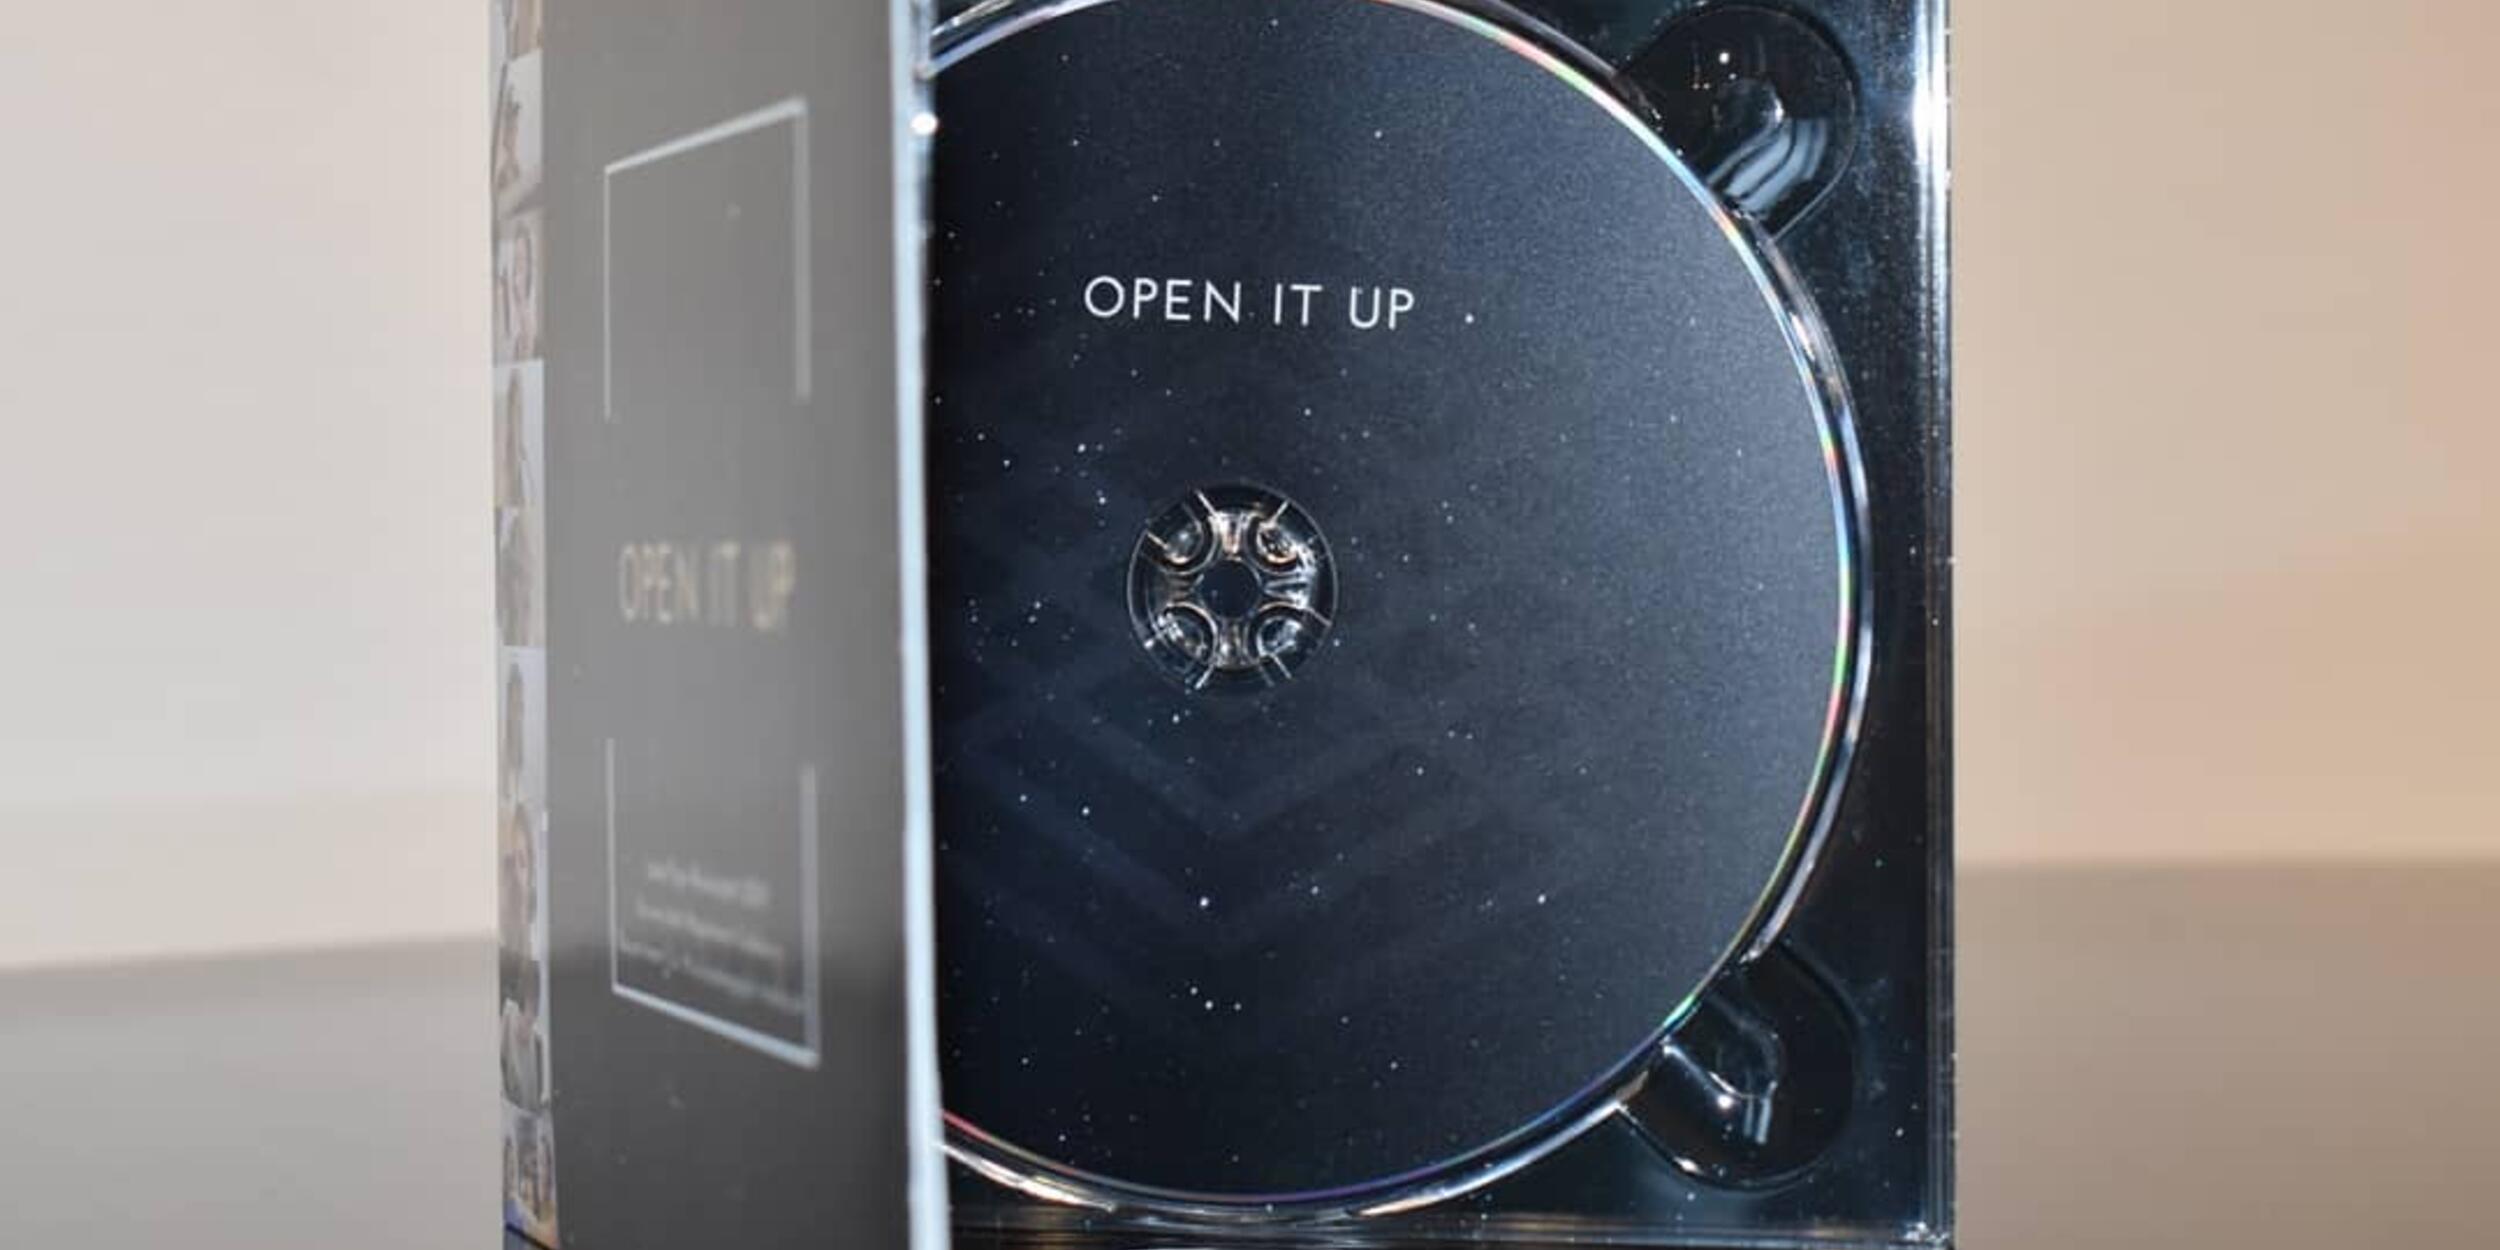 Detailaufnahme einer CD-Hülle, das Cover ist geöffnet, schwarze CD mit Aufschrift Open it up | © Musikpädagogik Innsbruck